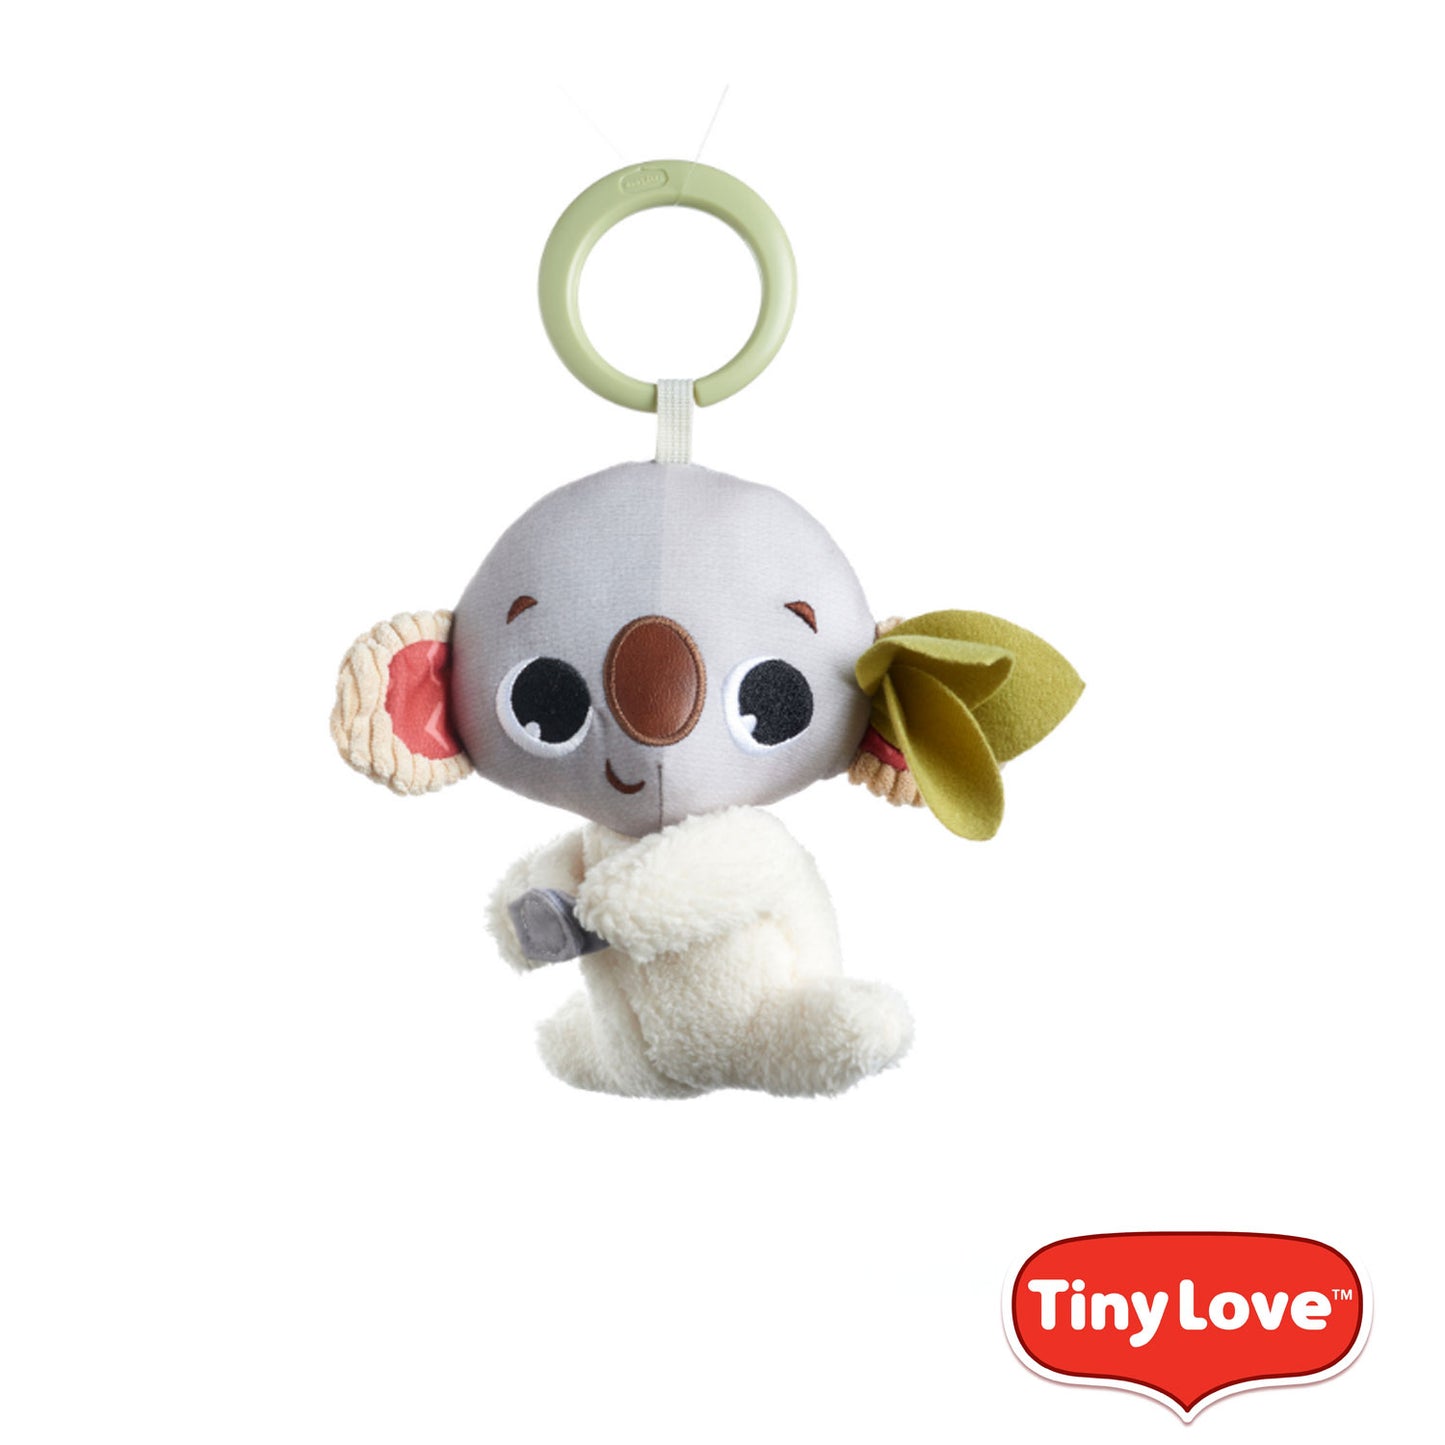 Tiny Love - Boho Chic Koala Rattle